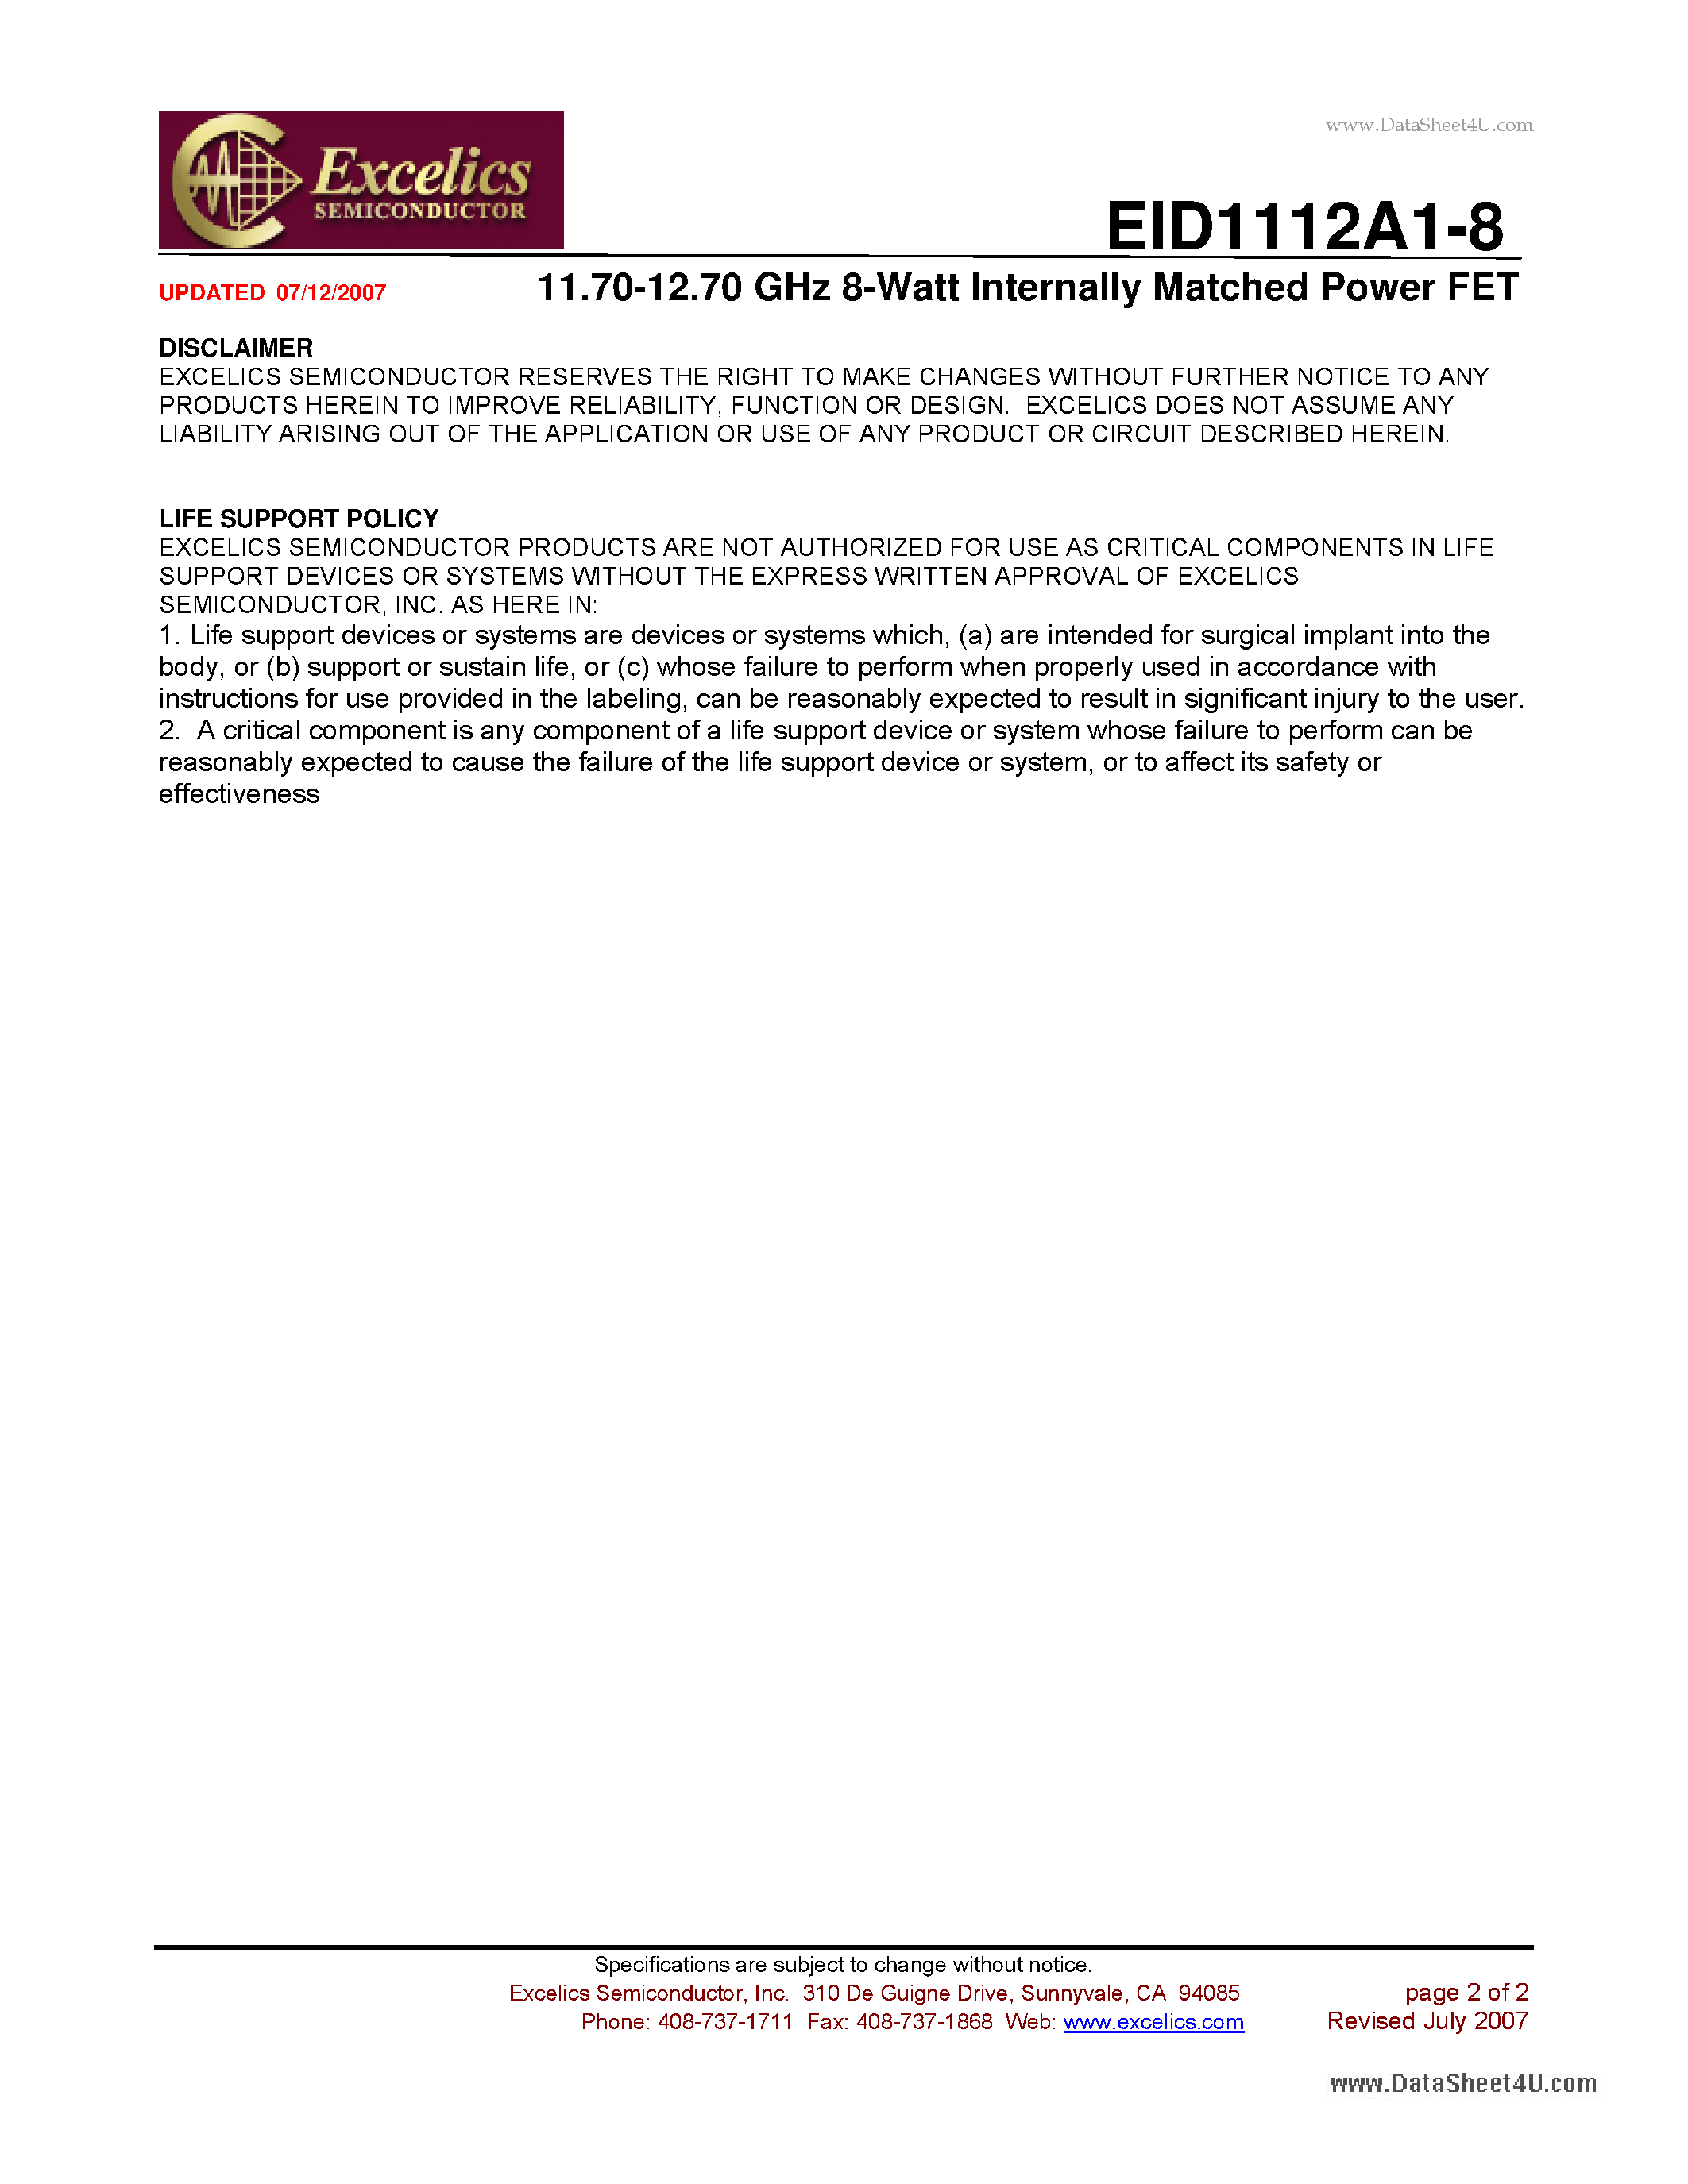 Даташит EID1112A1-8 - 11.70-12.70 GHz 8-Watt Internally Matched Power FET страница 2